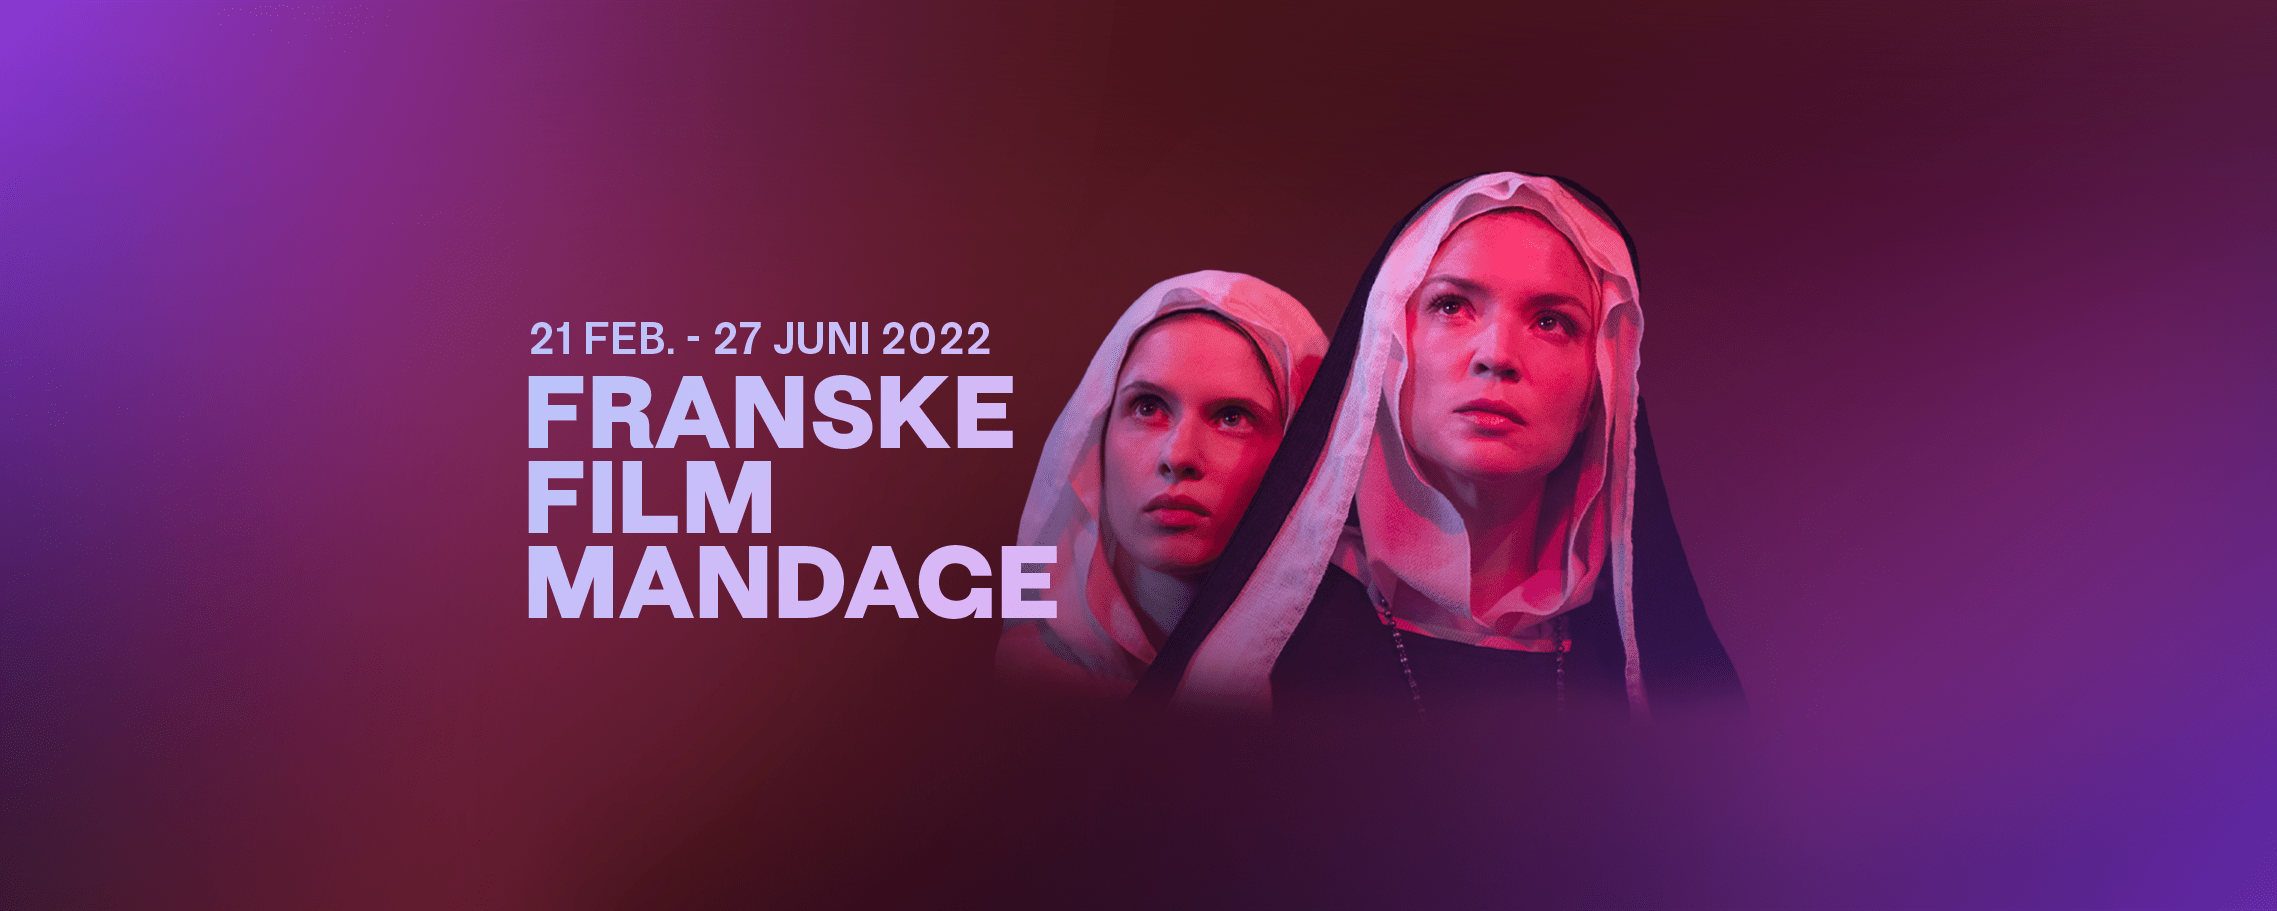 Franske Film Mandage 2022